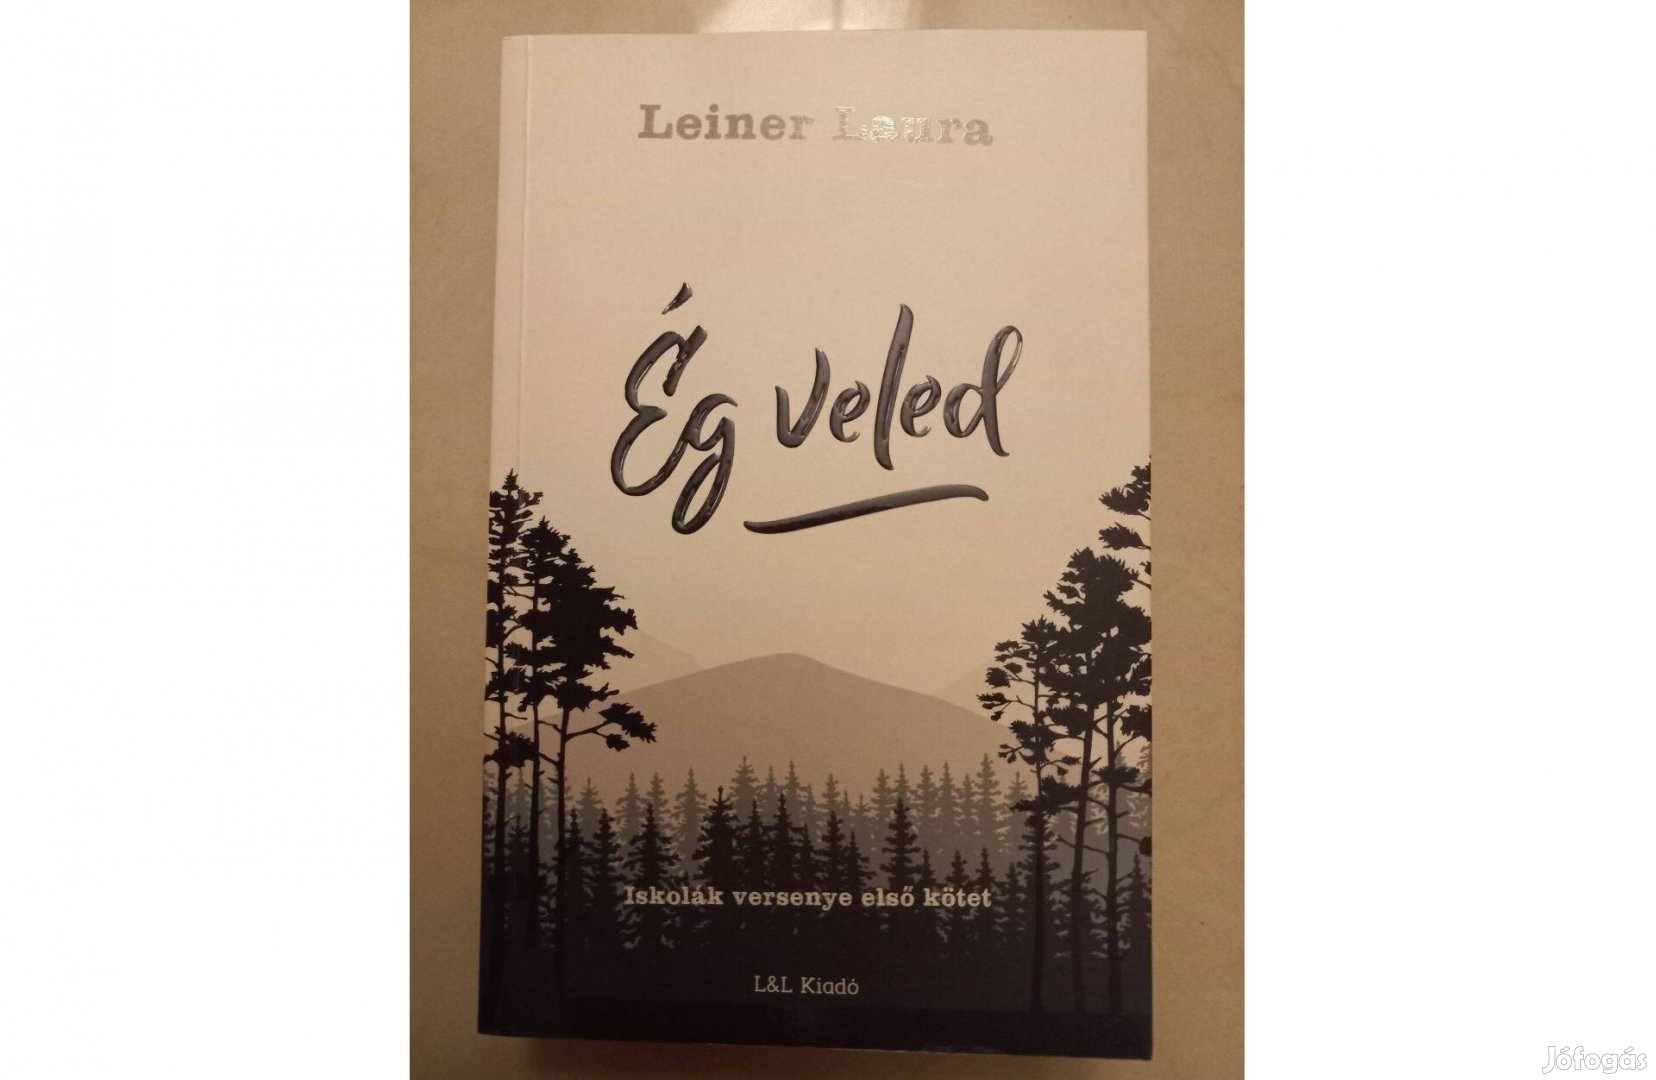 Eladó az Ég veled című könyv, szerzője Leiner Laura